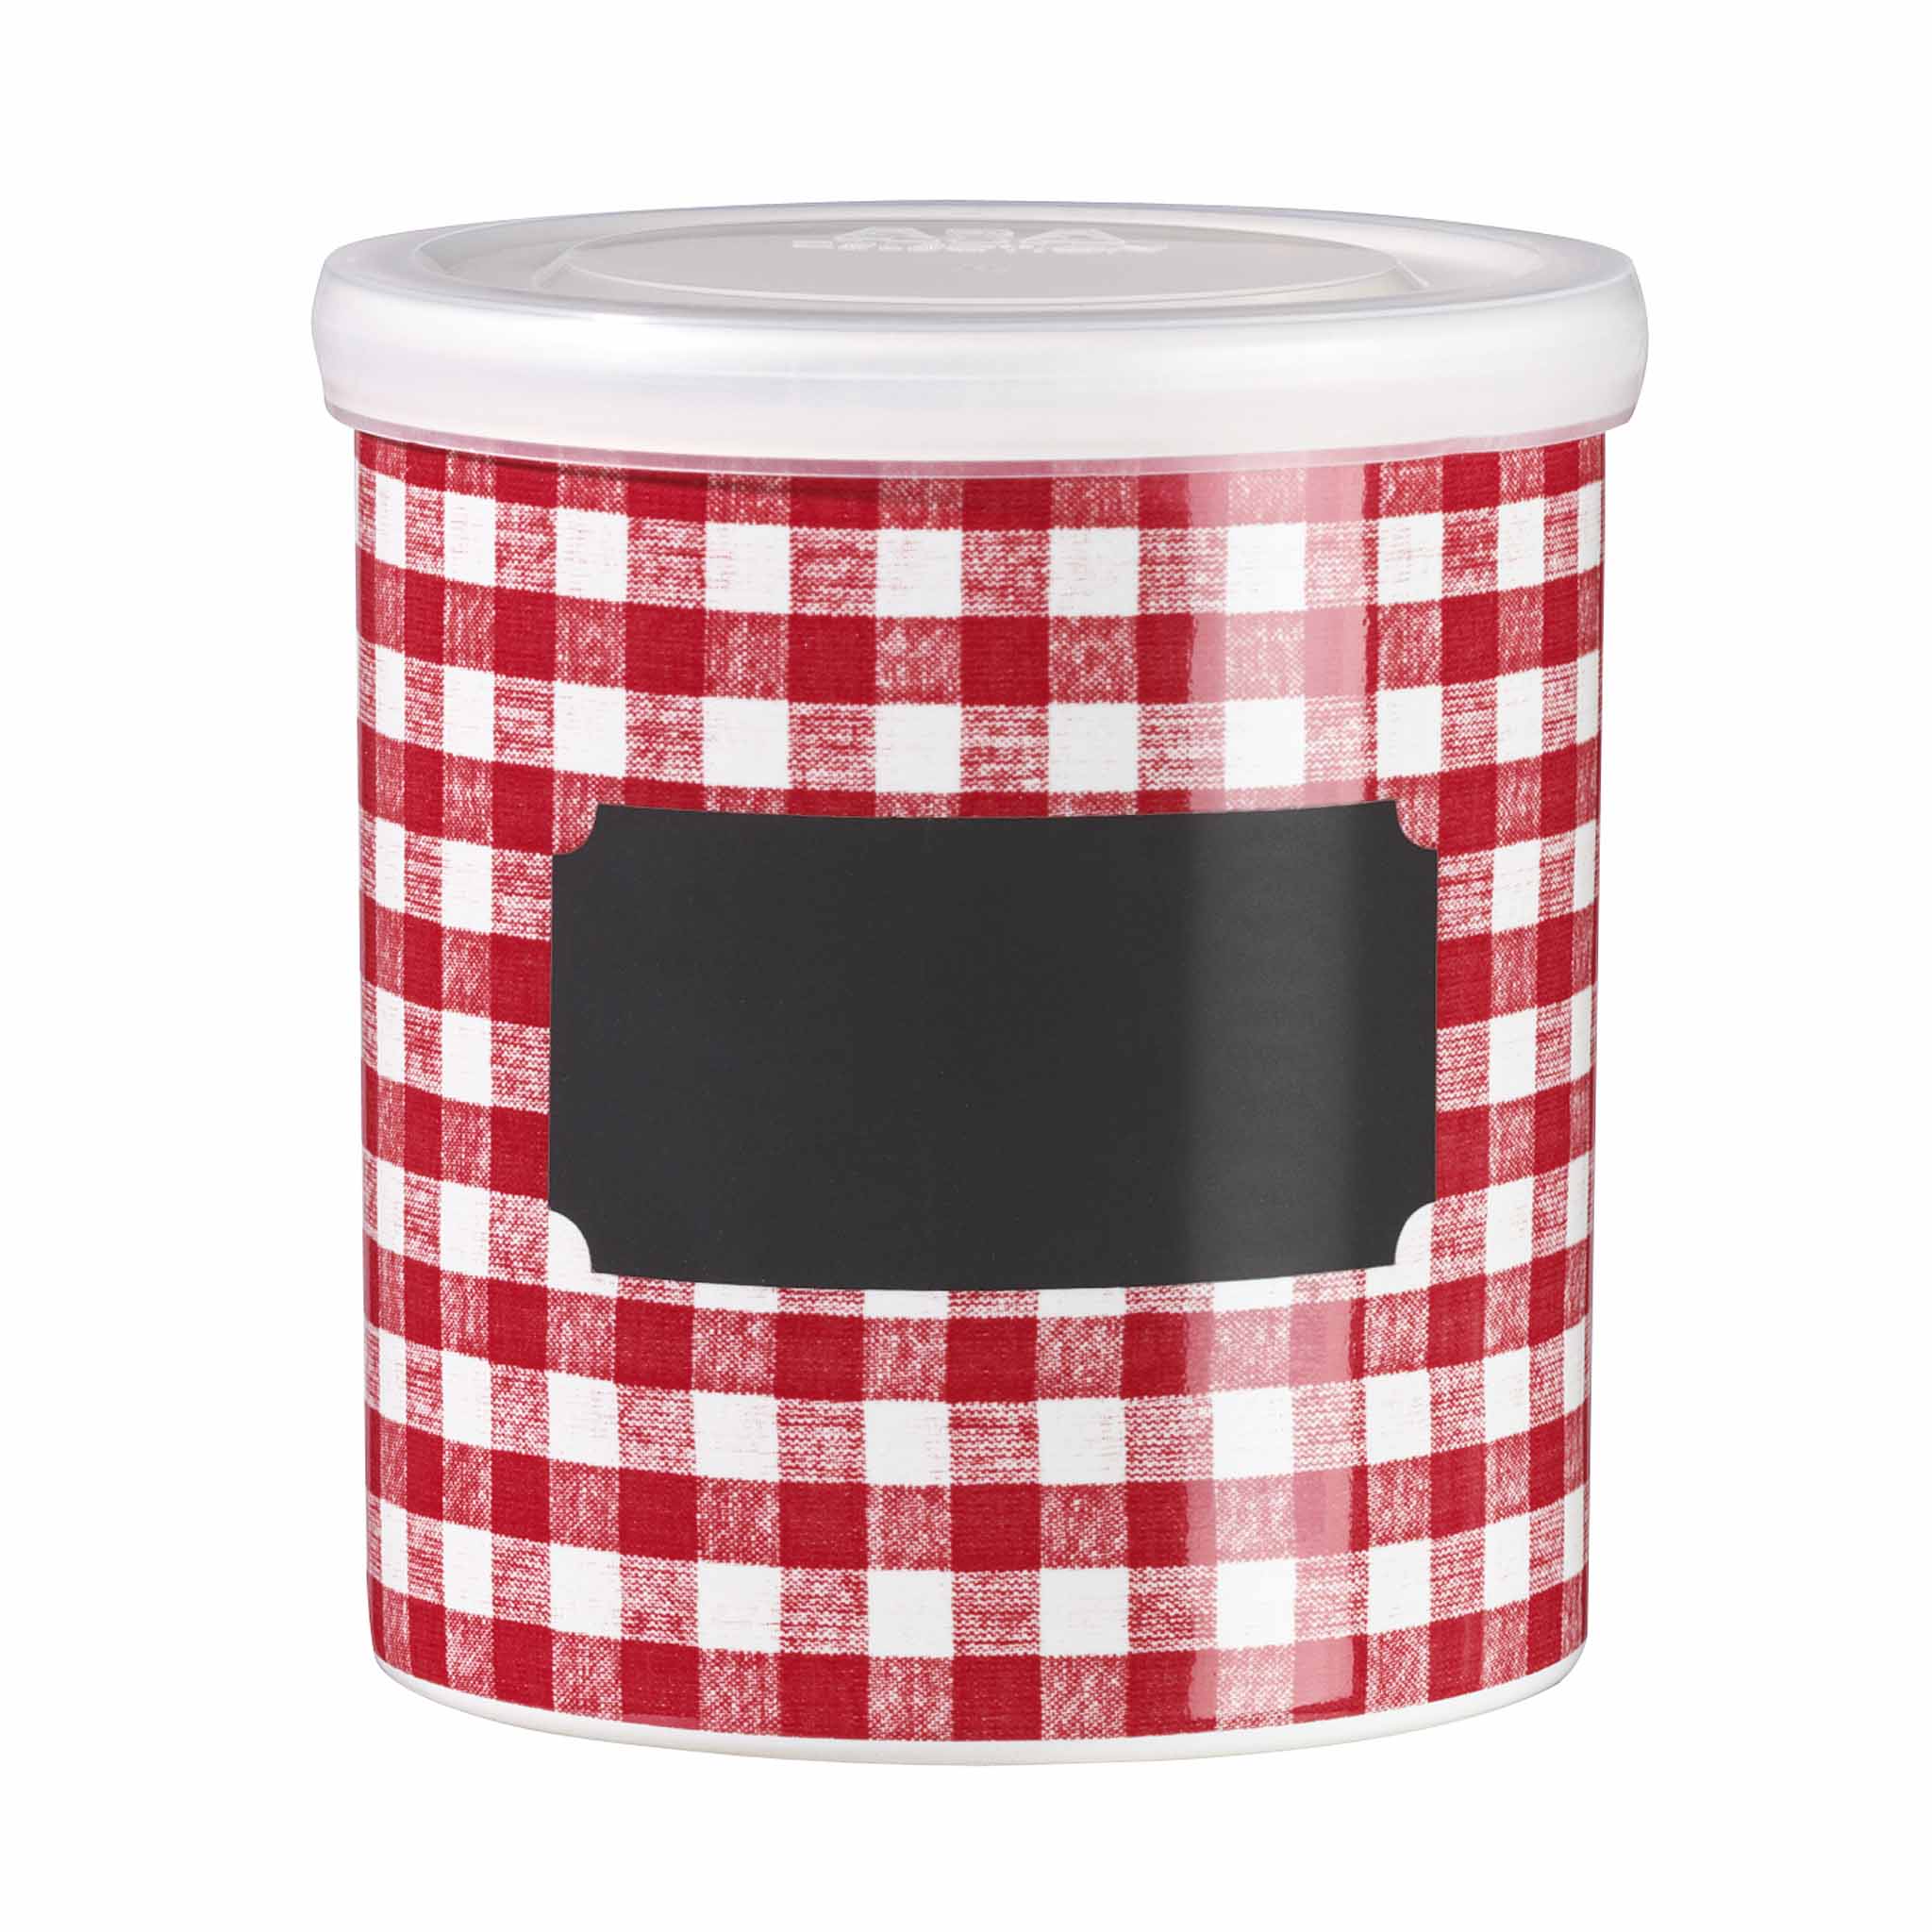 ASA Selection Grandmere medium storage jar in red.